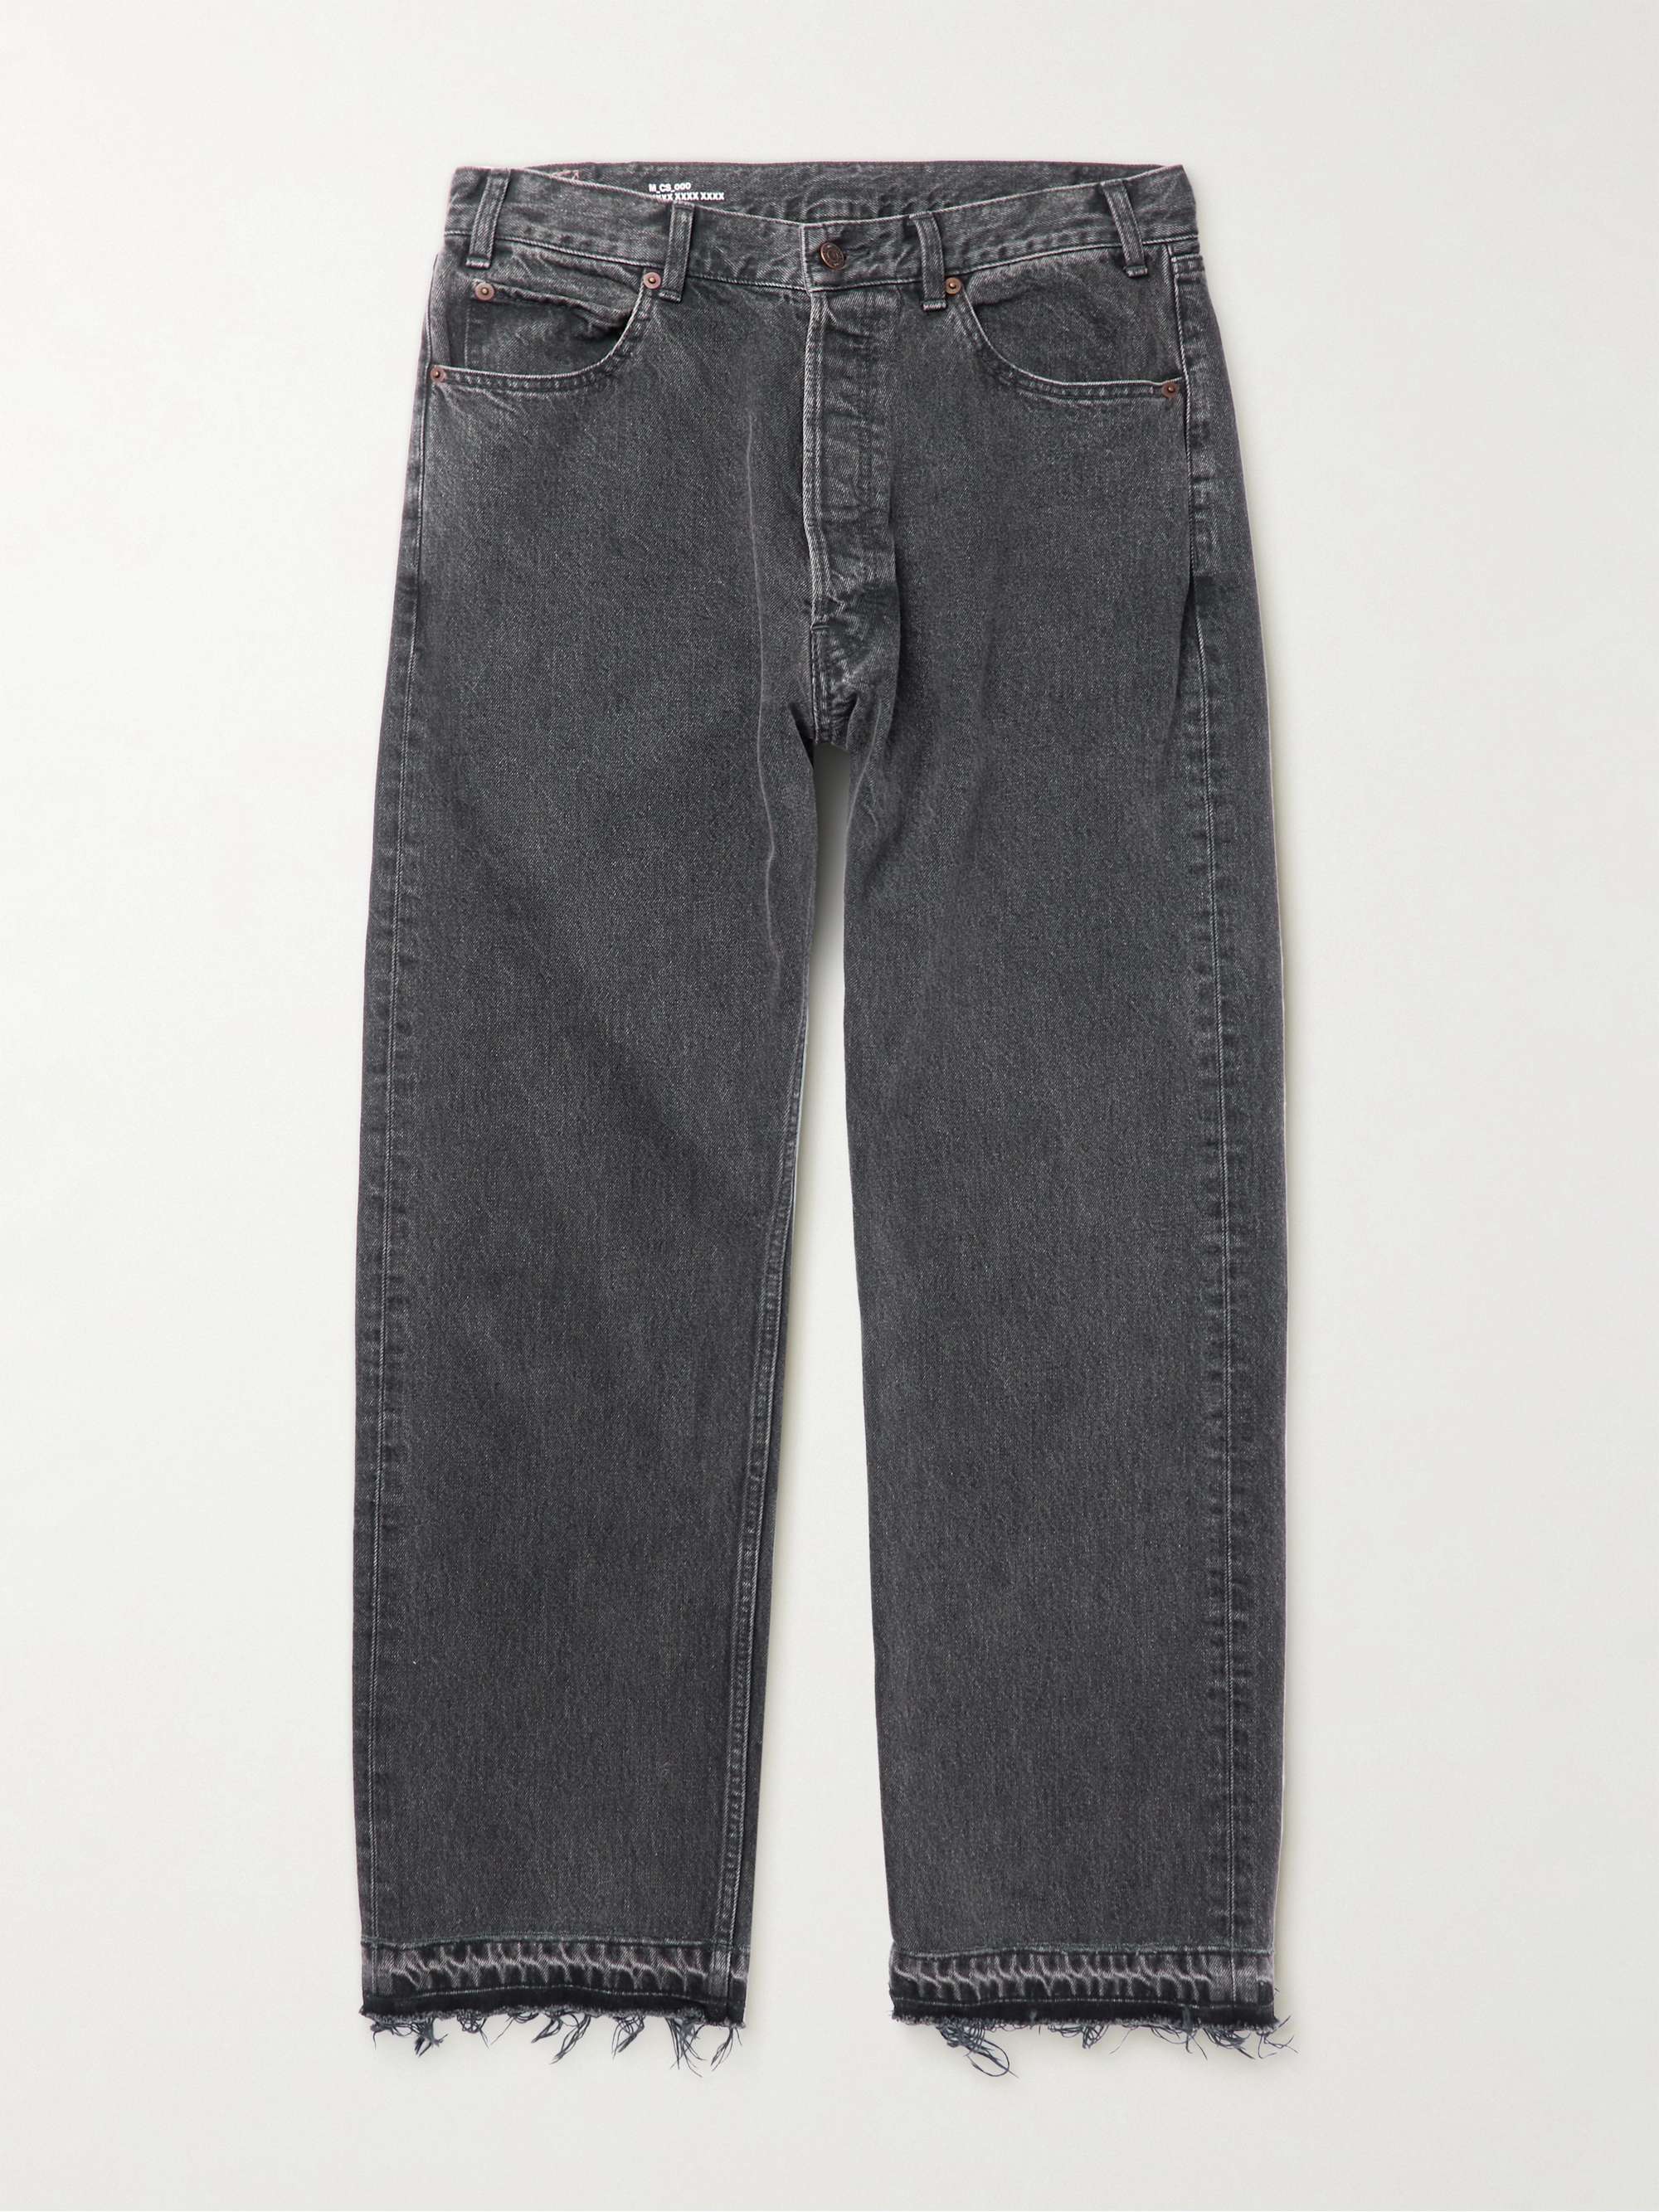 CELINE HOMME Frayed Straight-Leg Jeans